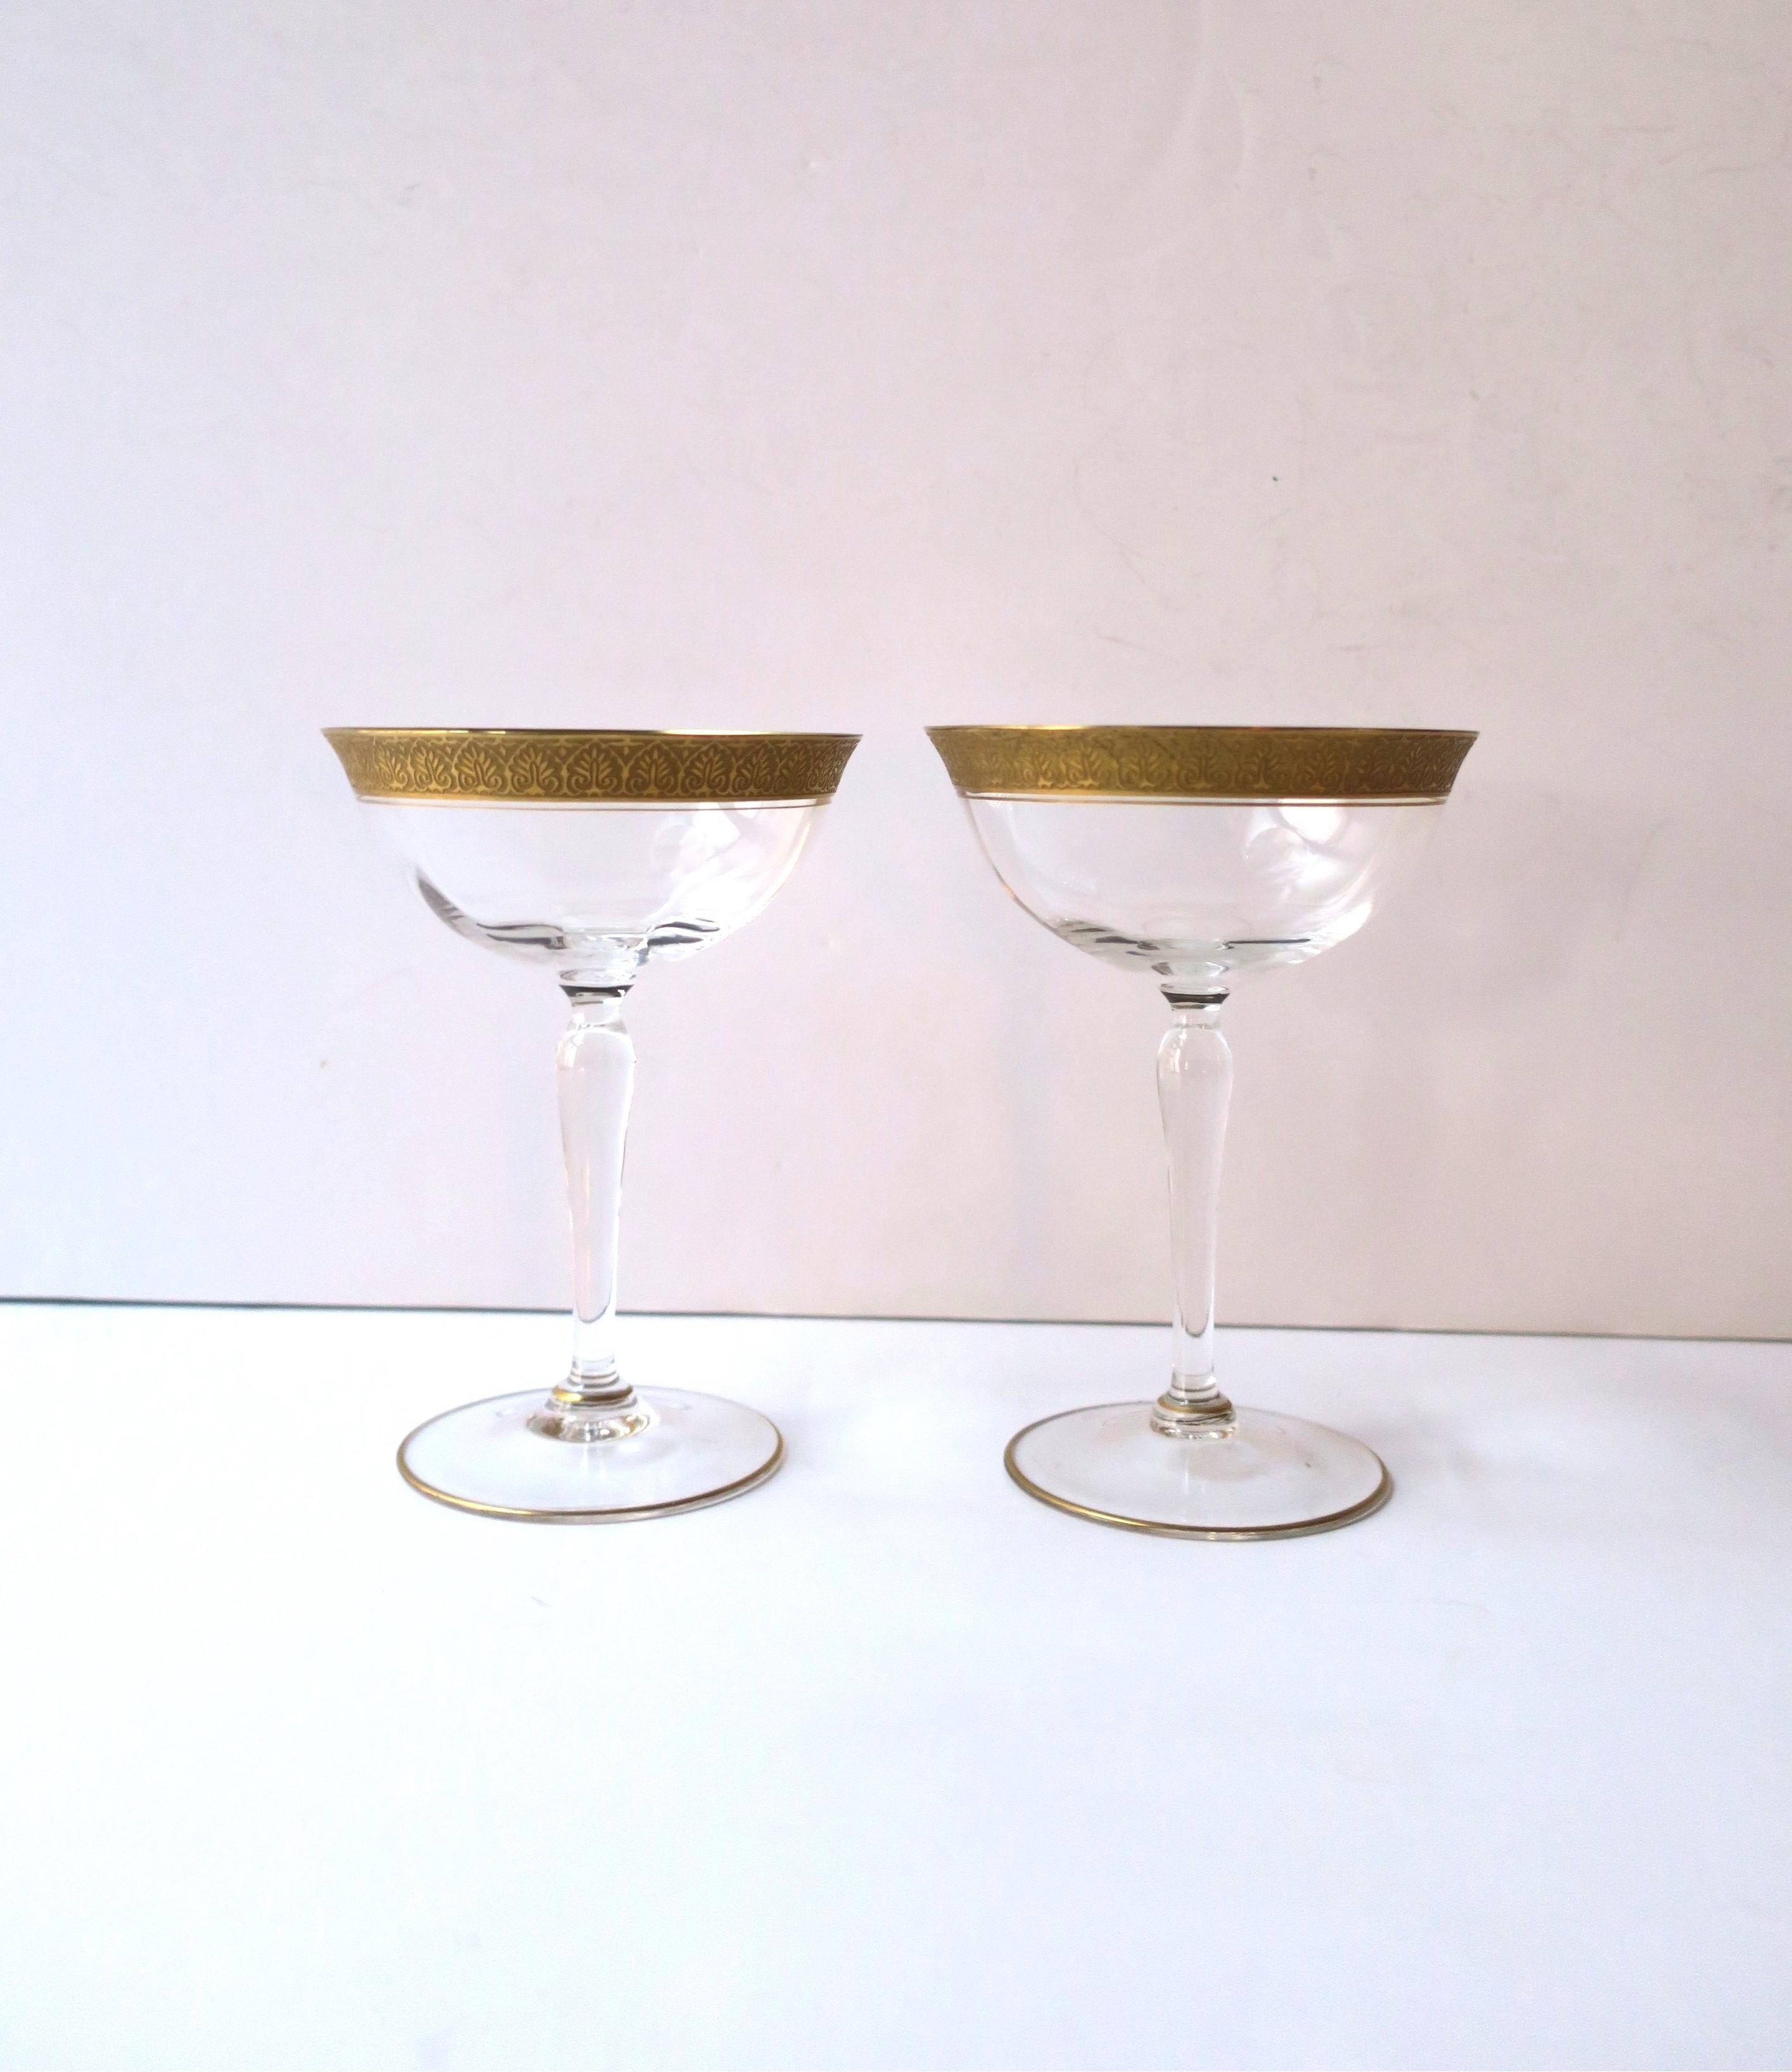 Magnifique paire de coupes à champagne ou à cocktail cerclées d'or 22 carats, vers le début du XXe siècle, Europe. Les paires ont un magnifique bord extérieur gaufré en or, un bord intérieur en or et un fin bord en or autour de la base. Un bel